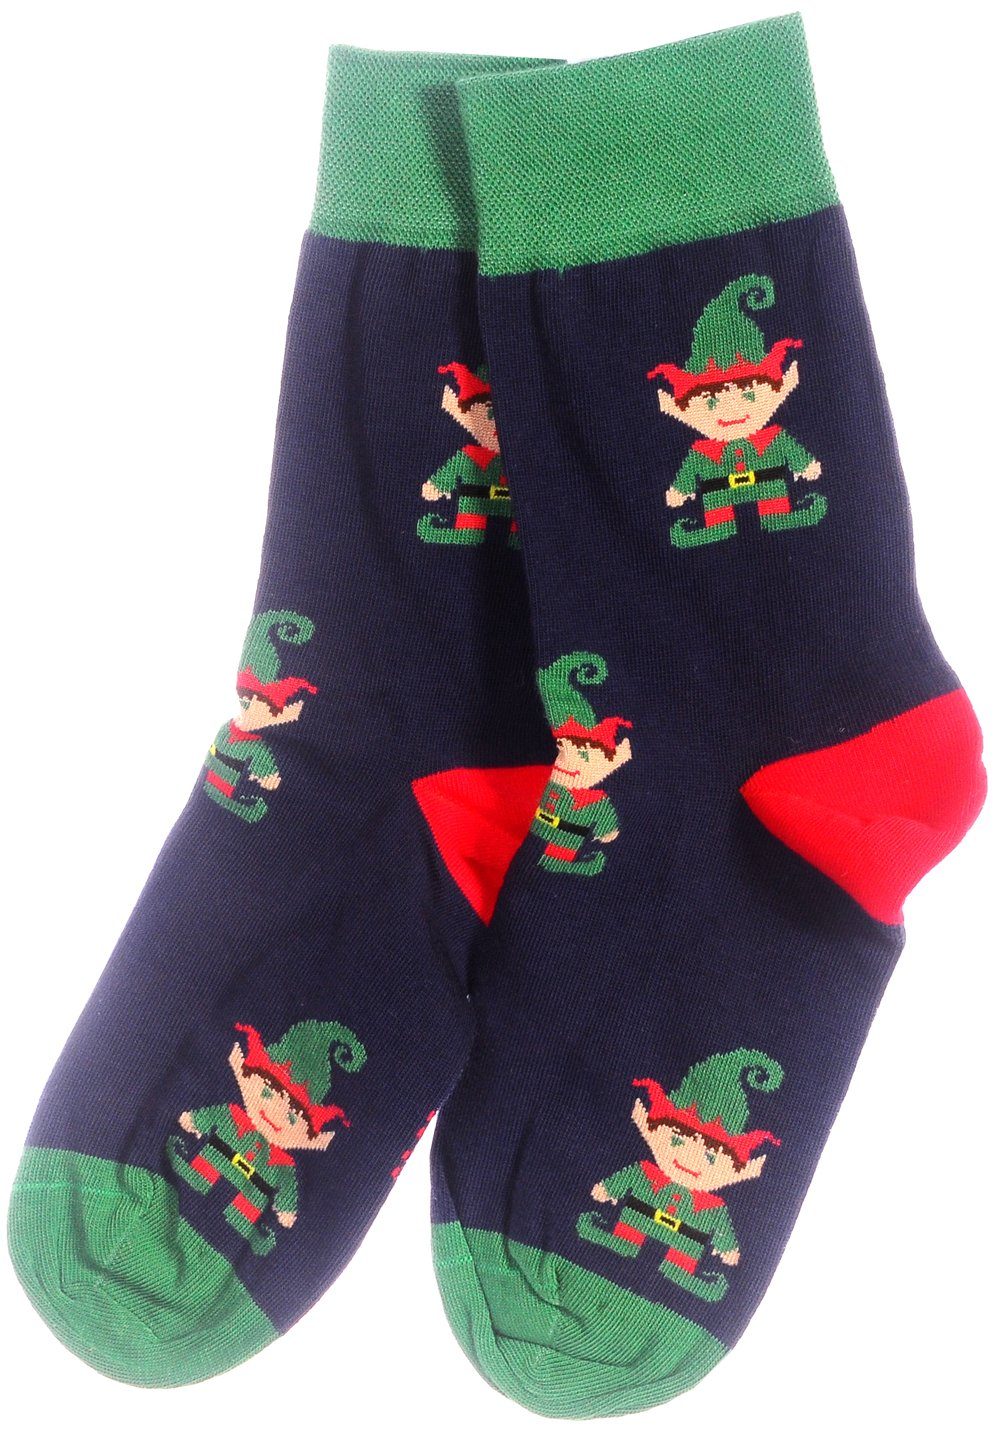 Martinex Socken 1 Paar lustige bunte Strümpfe 35 38 39 42 43 46 Weihnachtssocken